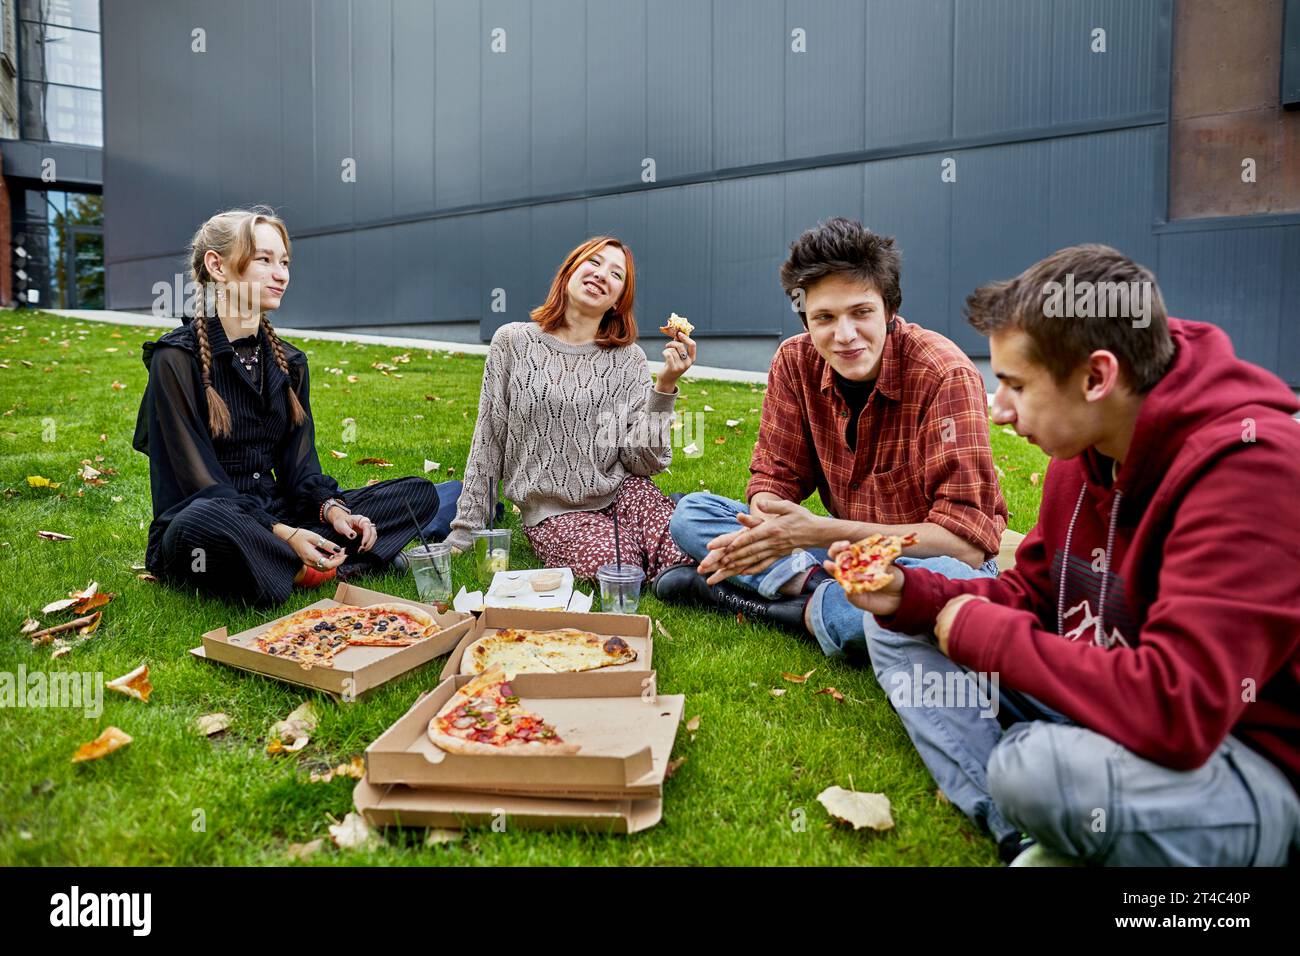 Eine Gruppe von Freunden isst Pizza und lacht auf dem Rasen Stockfoto